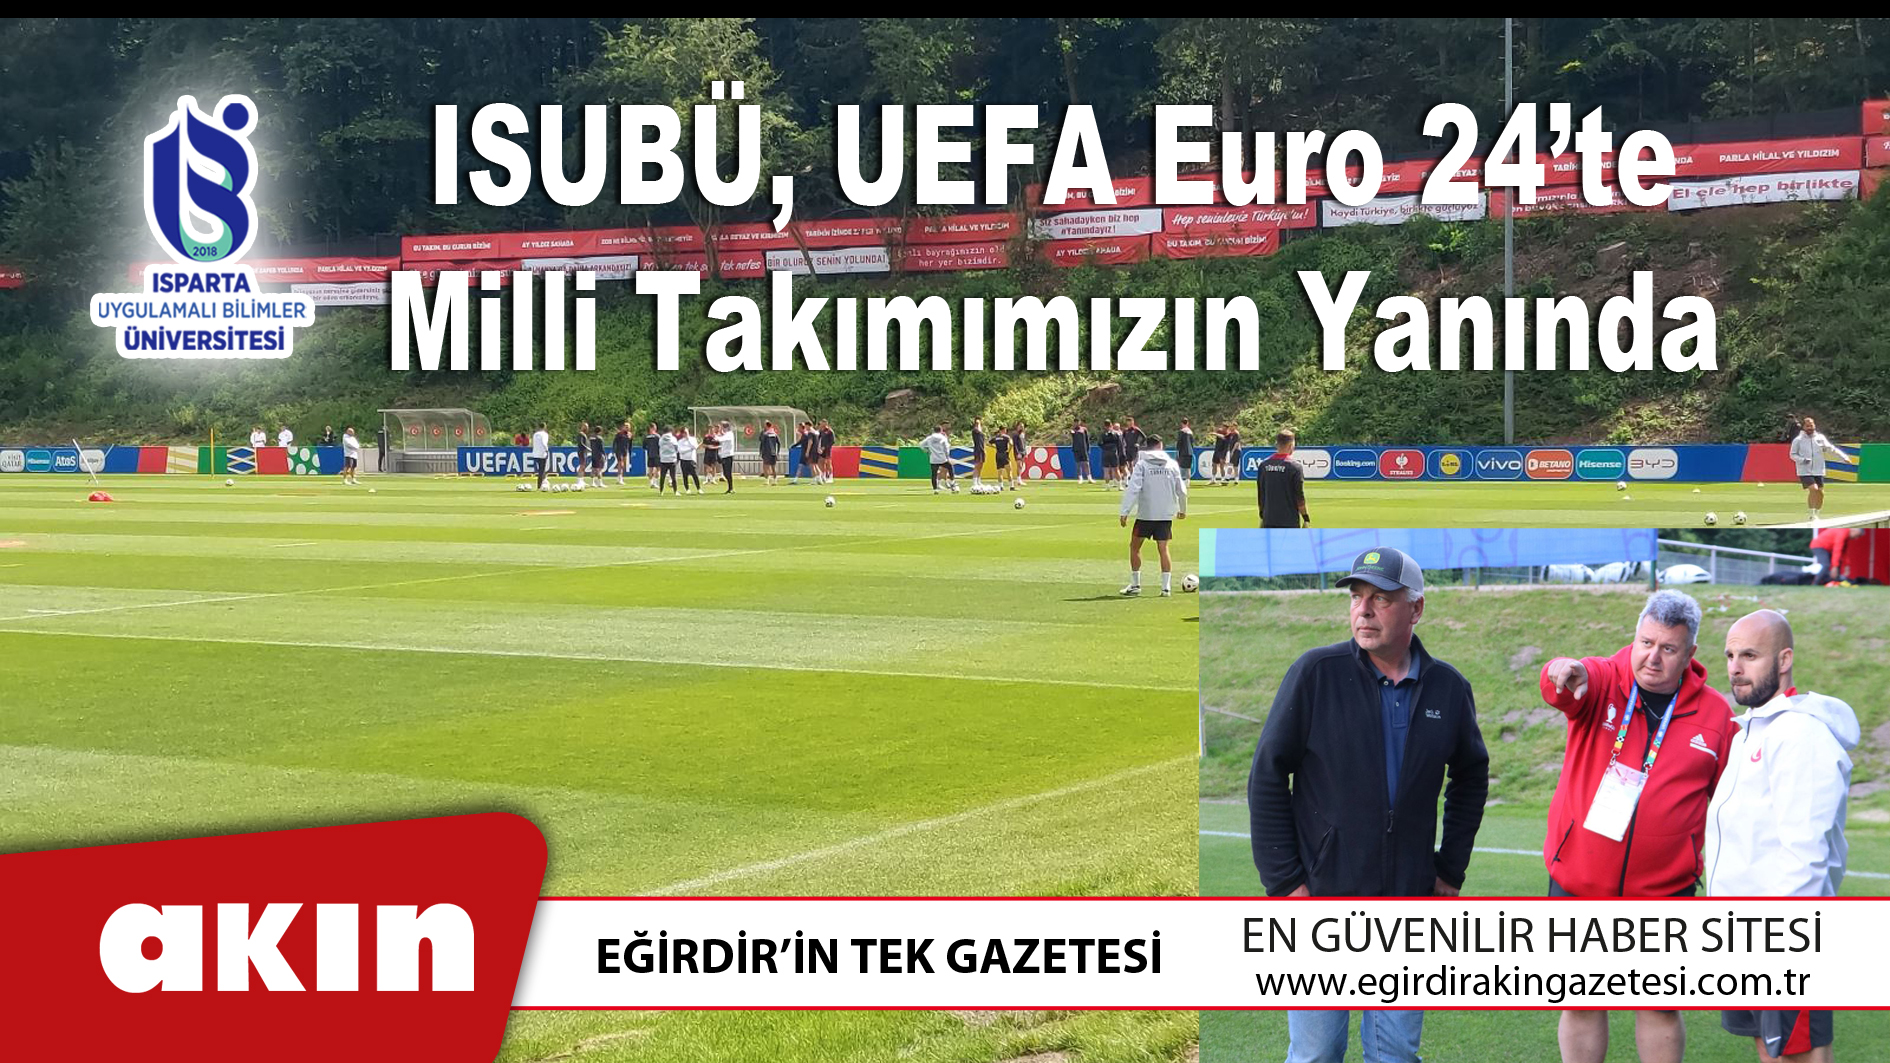 ISUBÜ, UEFA Euro 24’te Milli Takımımızın Yanında